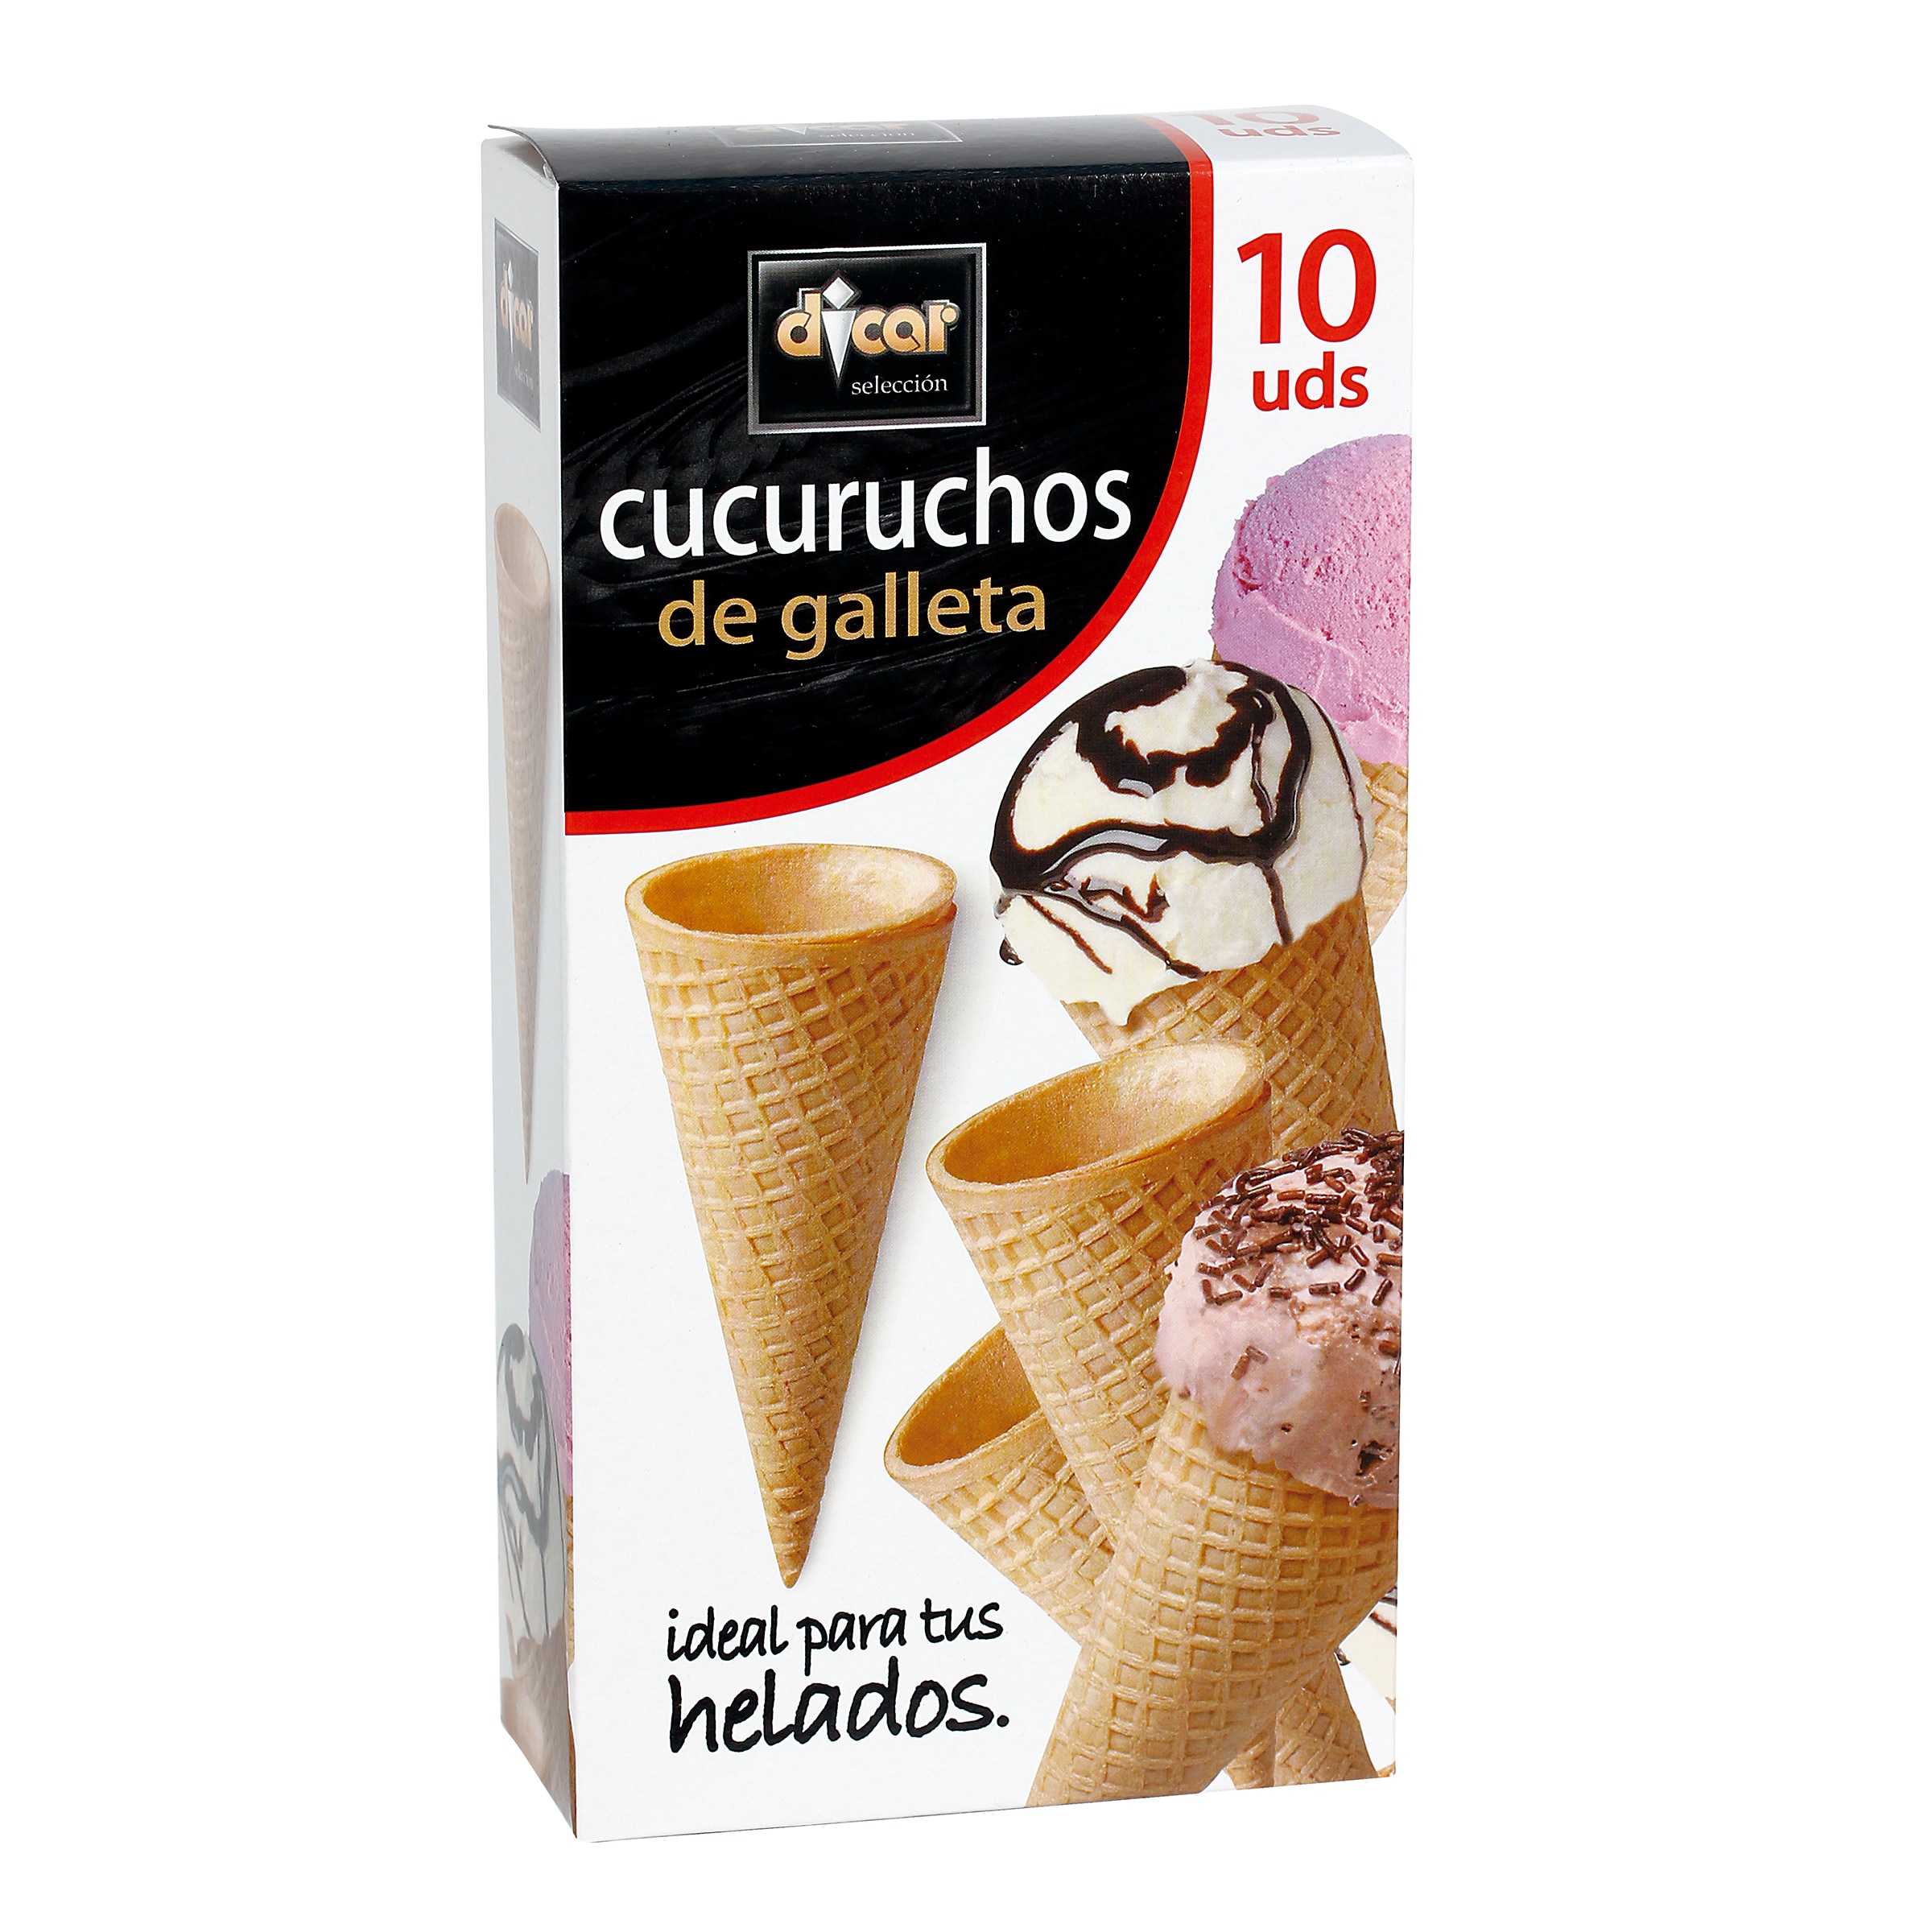 Cucuruchos de galleta DICAR CAJA 100 GR - Supermercados DIA